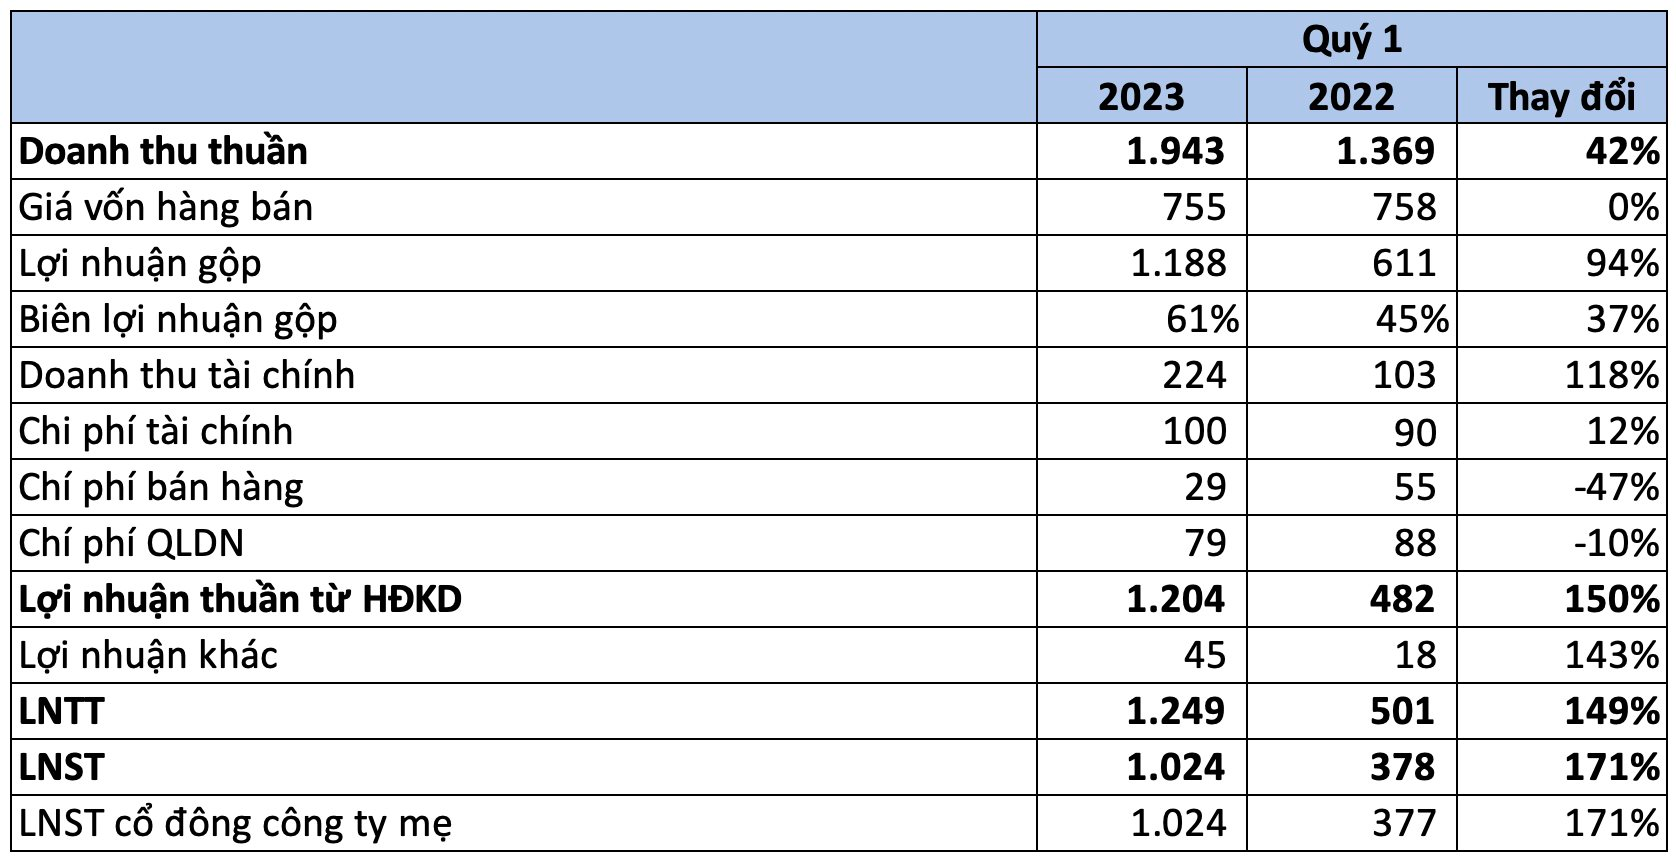 Vincom Retail (VRE) lãi kỷ lục trong quý 1/2023, gấp 3 lần cùng kỳ - Ảnh 1.